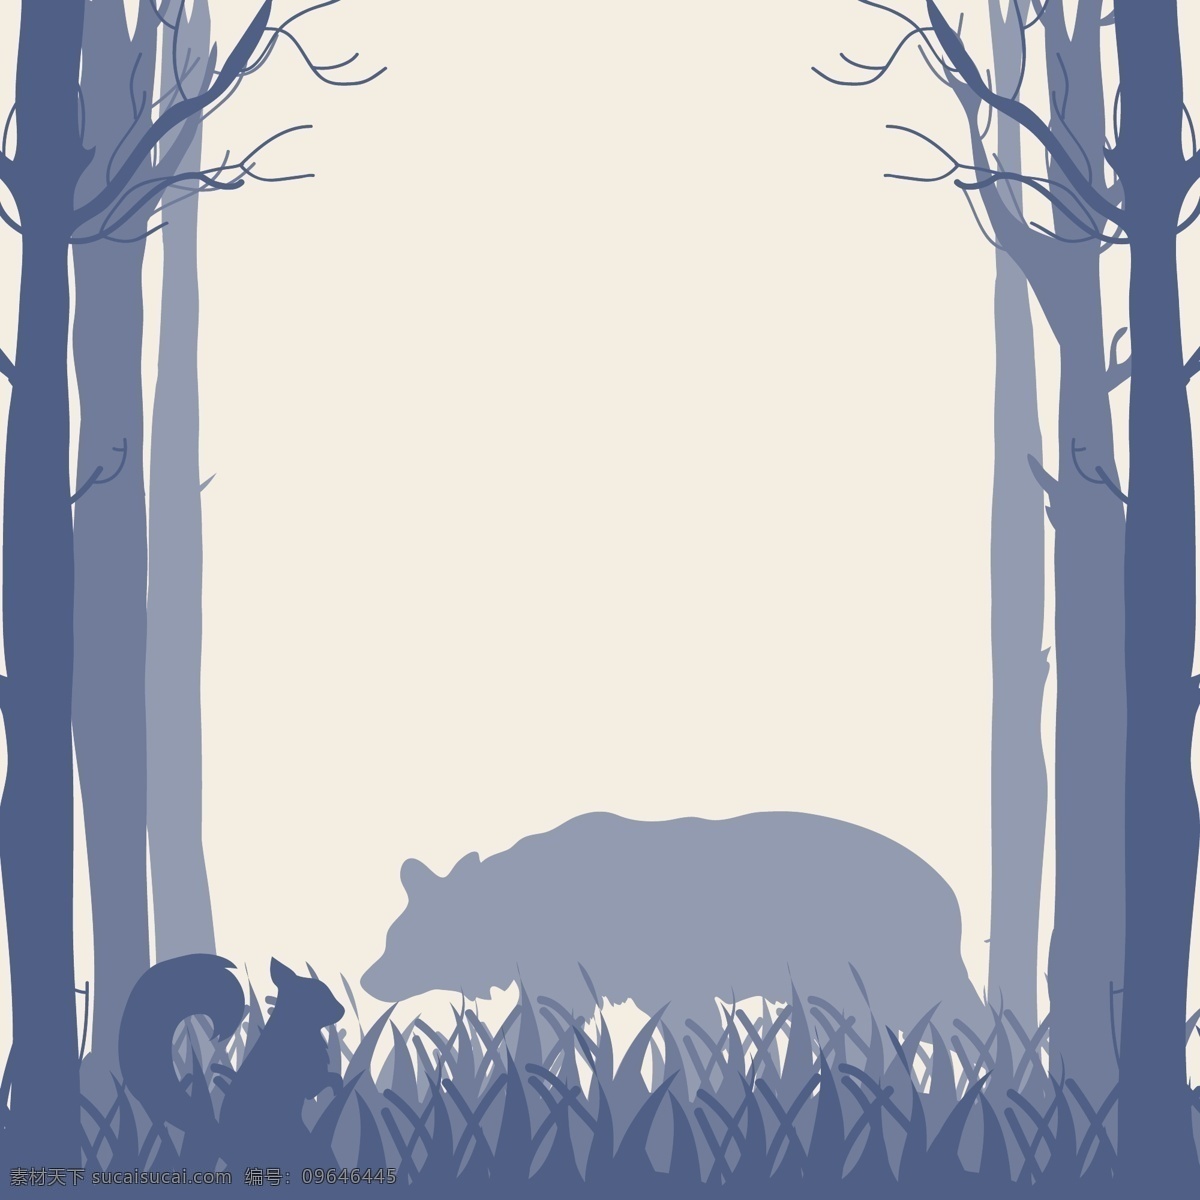 森林 熊 矢量 剪影 树 侧影 景观 动物 插图 自然 植物 树木 野生 松林 木材 风景漫画 动漫动画